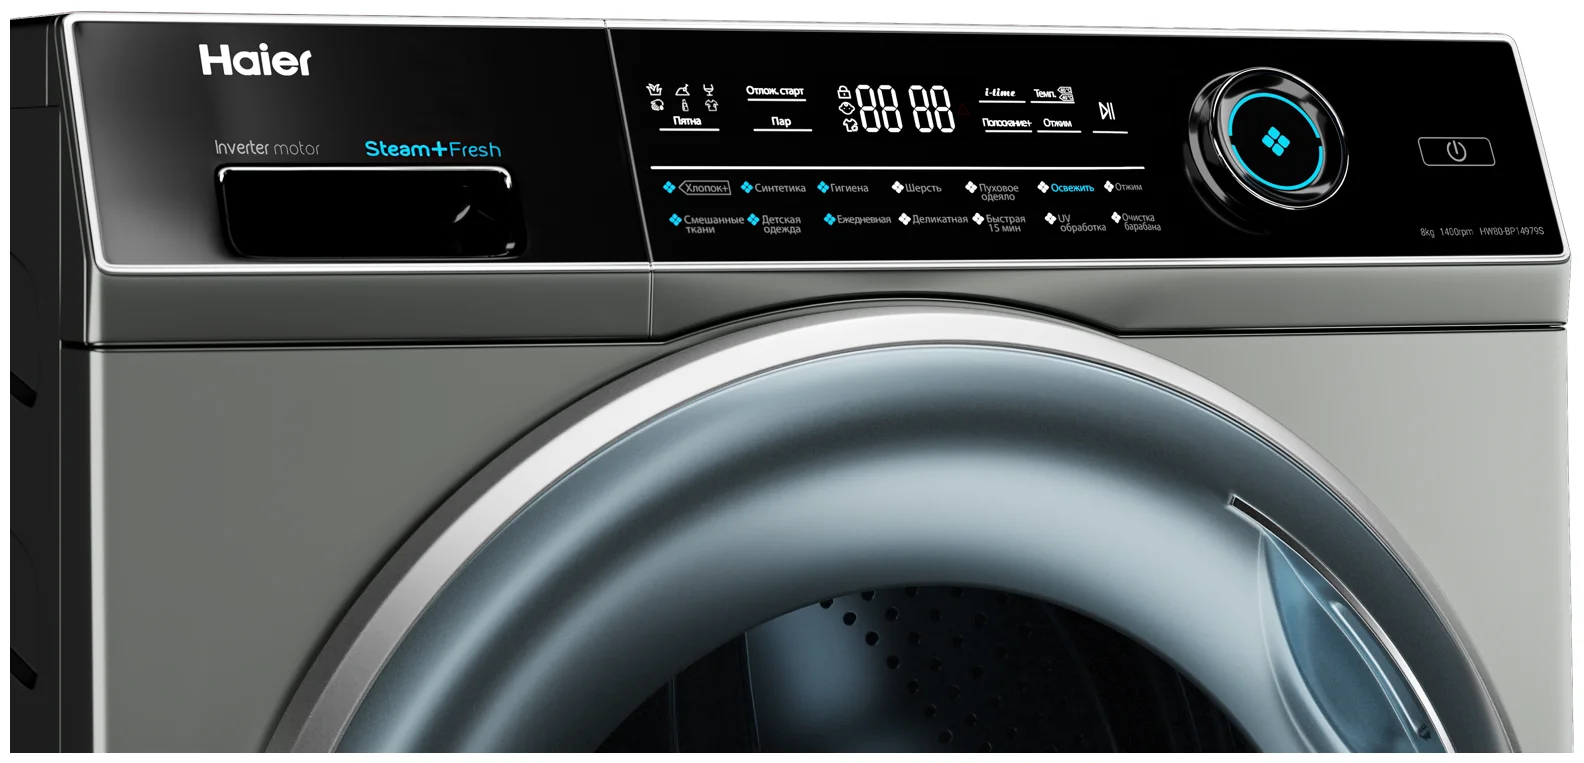 Обзор и рейтинг лучших стиральных машин фирмы Haier Самые качественные и функциональные модели по отзывам покупателей и характеристикам